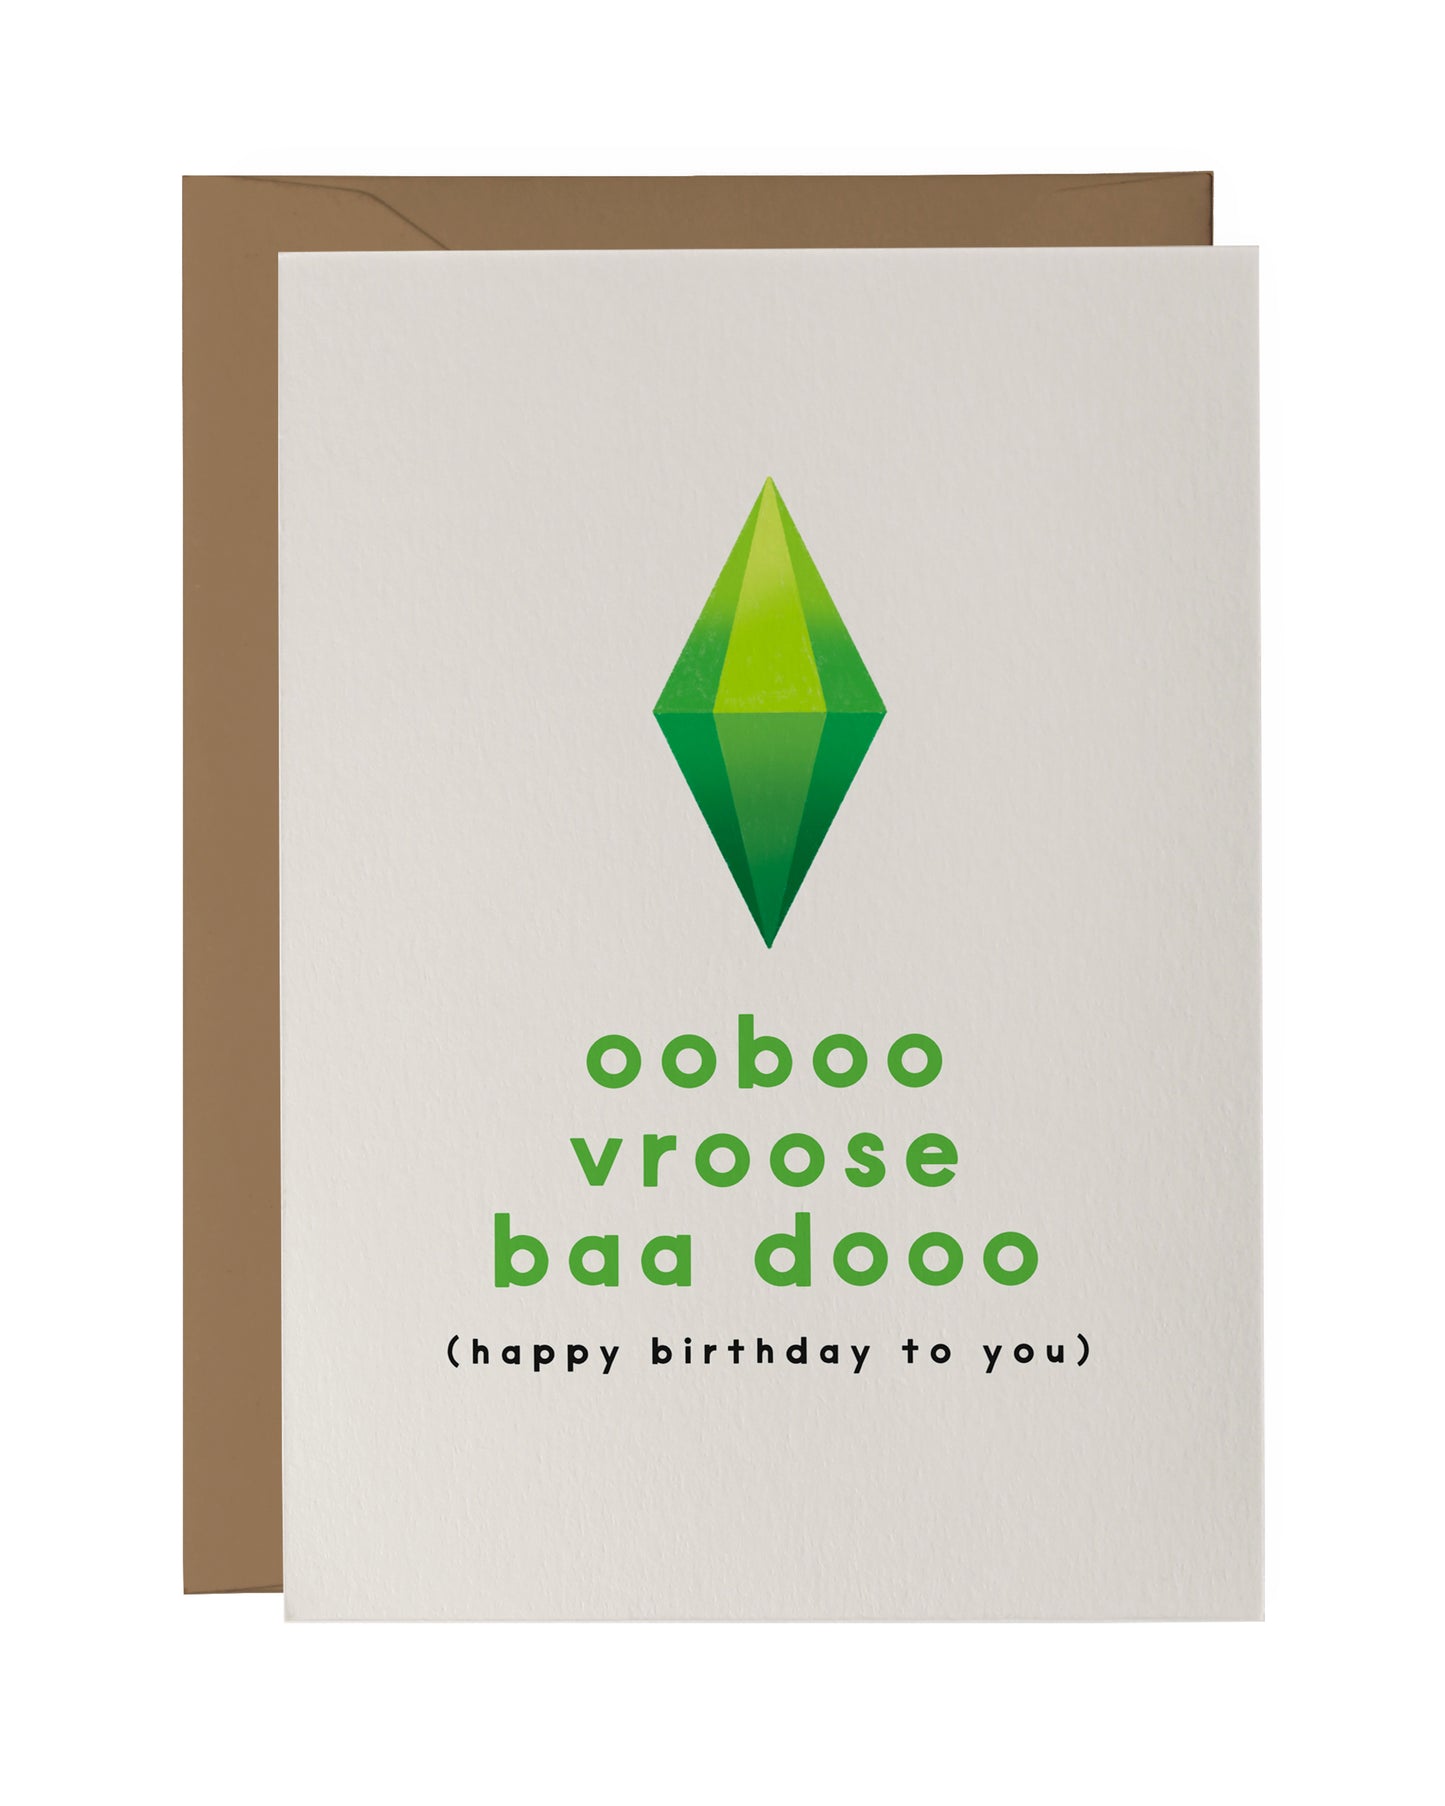 Ooboo Vroose Baa Dooo (Happy Birthday To You) | The Sims Birthday Card